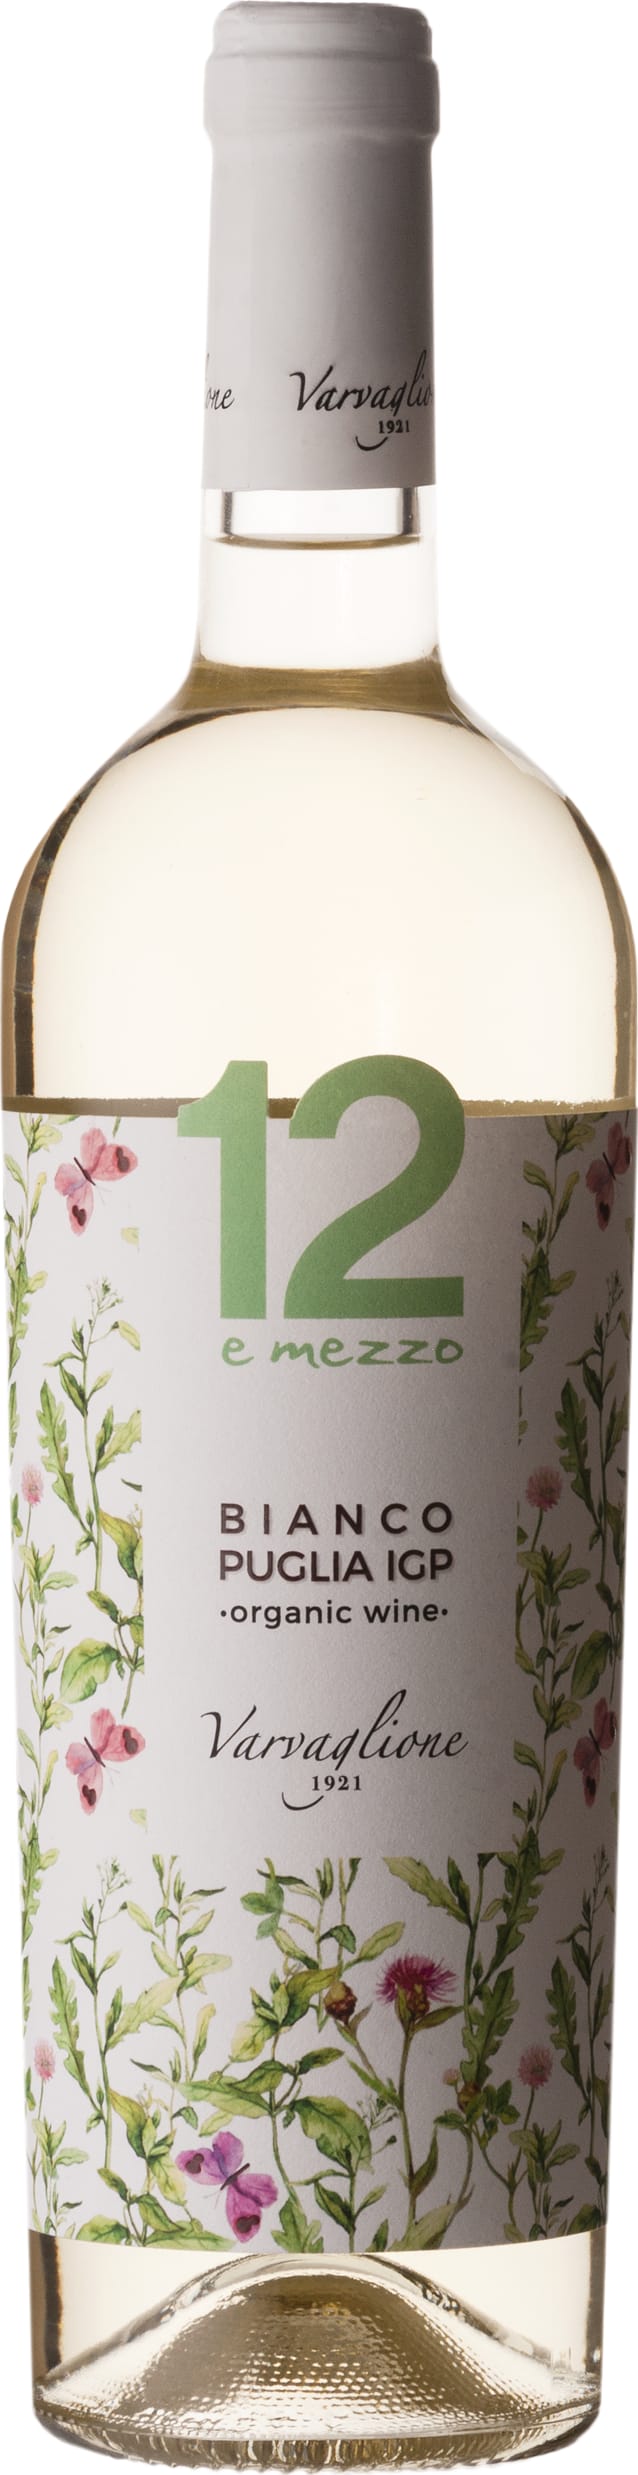 Vigne e Vini 12e Mezzo Bianco Puglia IGP 2022 75cl - Buy Vigne e Vini Wines from GREAT WINES DIRECT wine shop